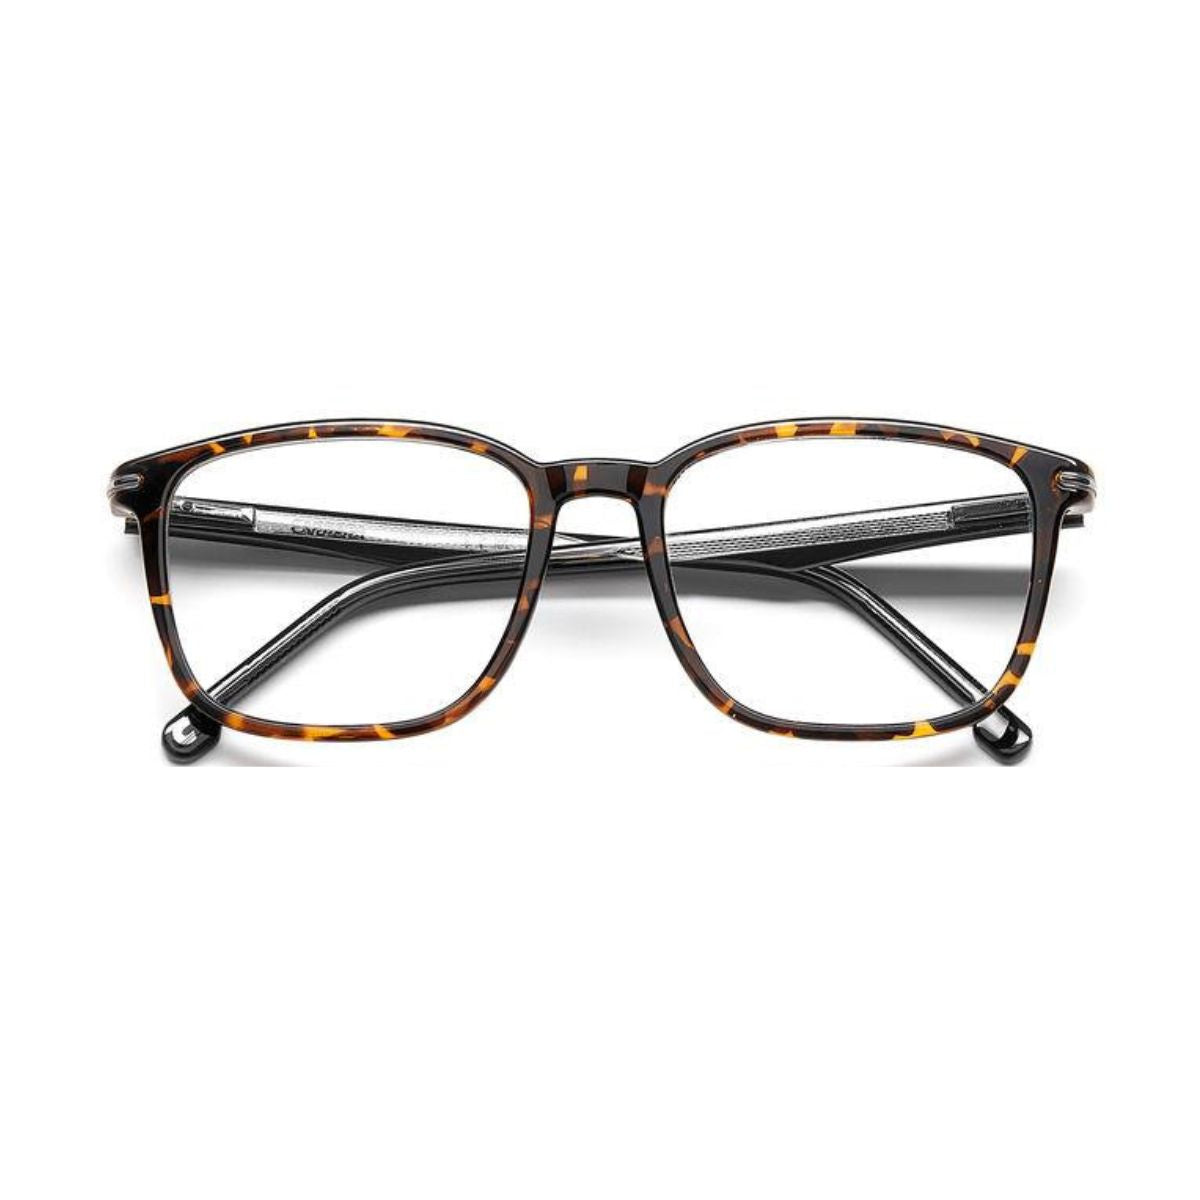 "stylish Carrera 292 086 trendy eyewear frame for men's at optorium"